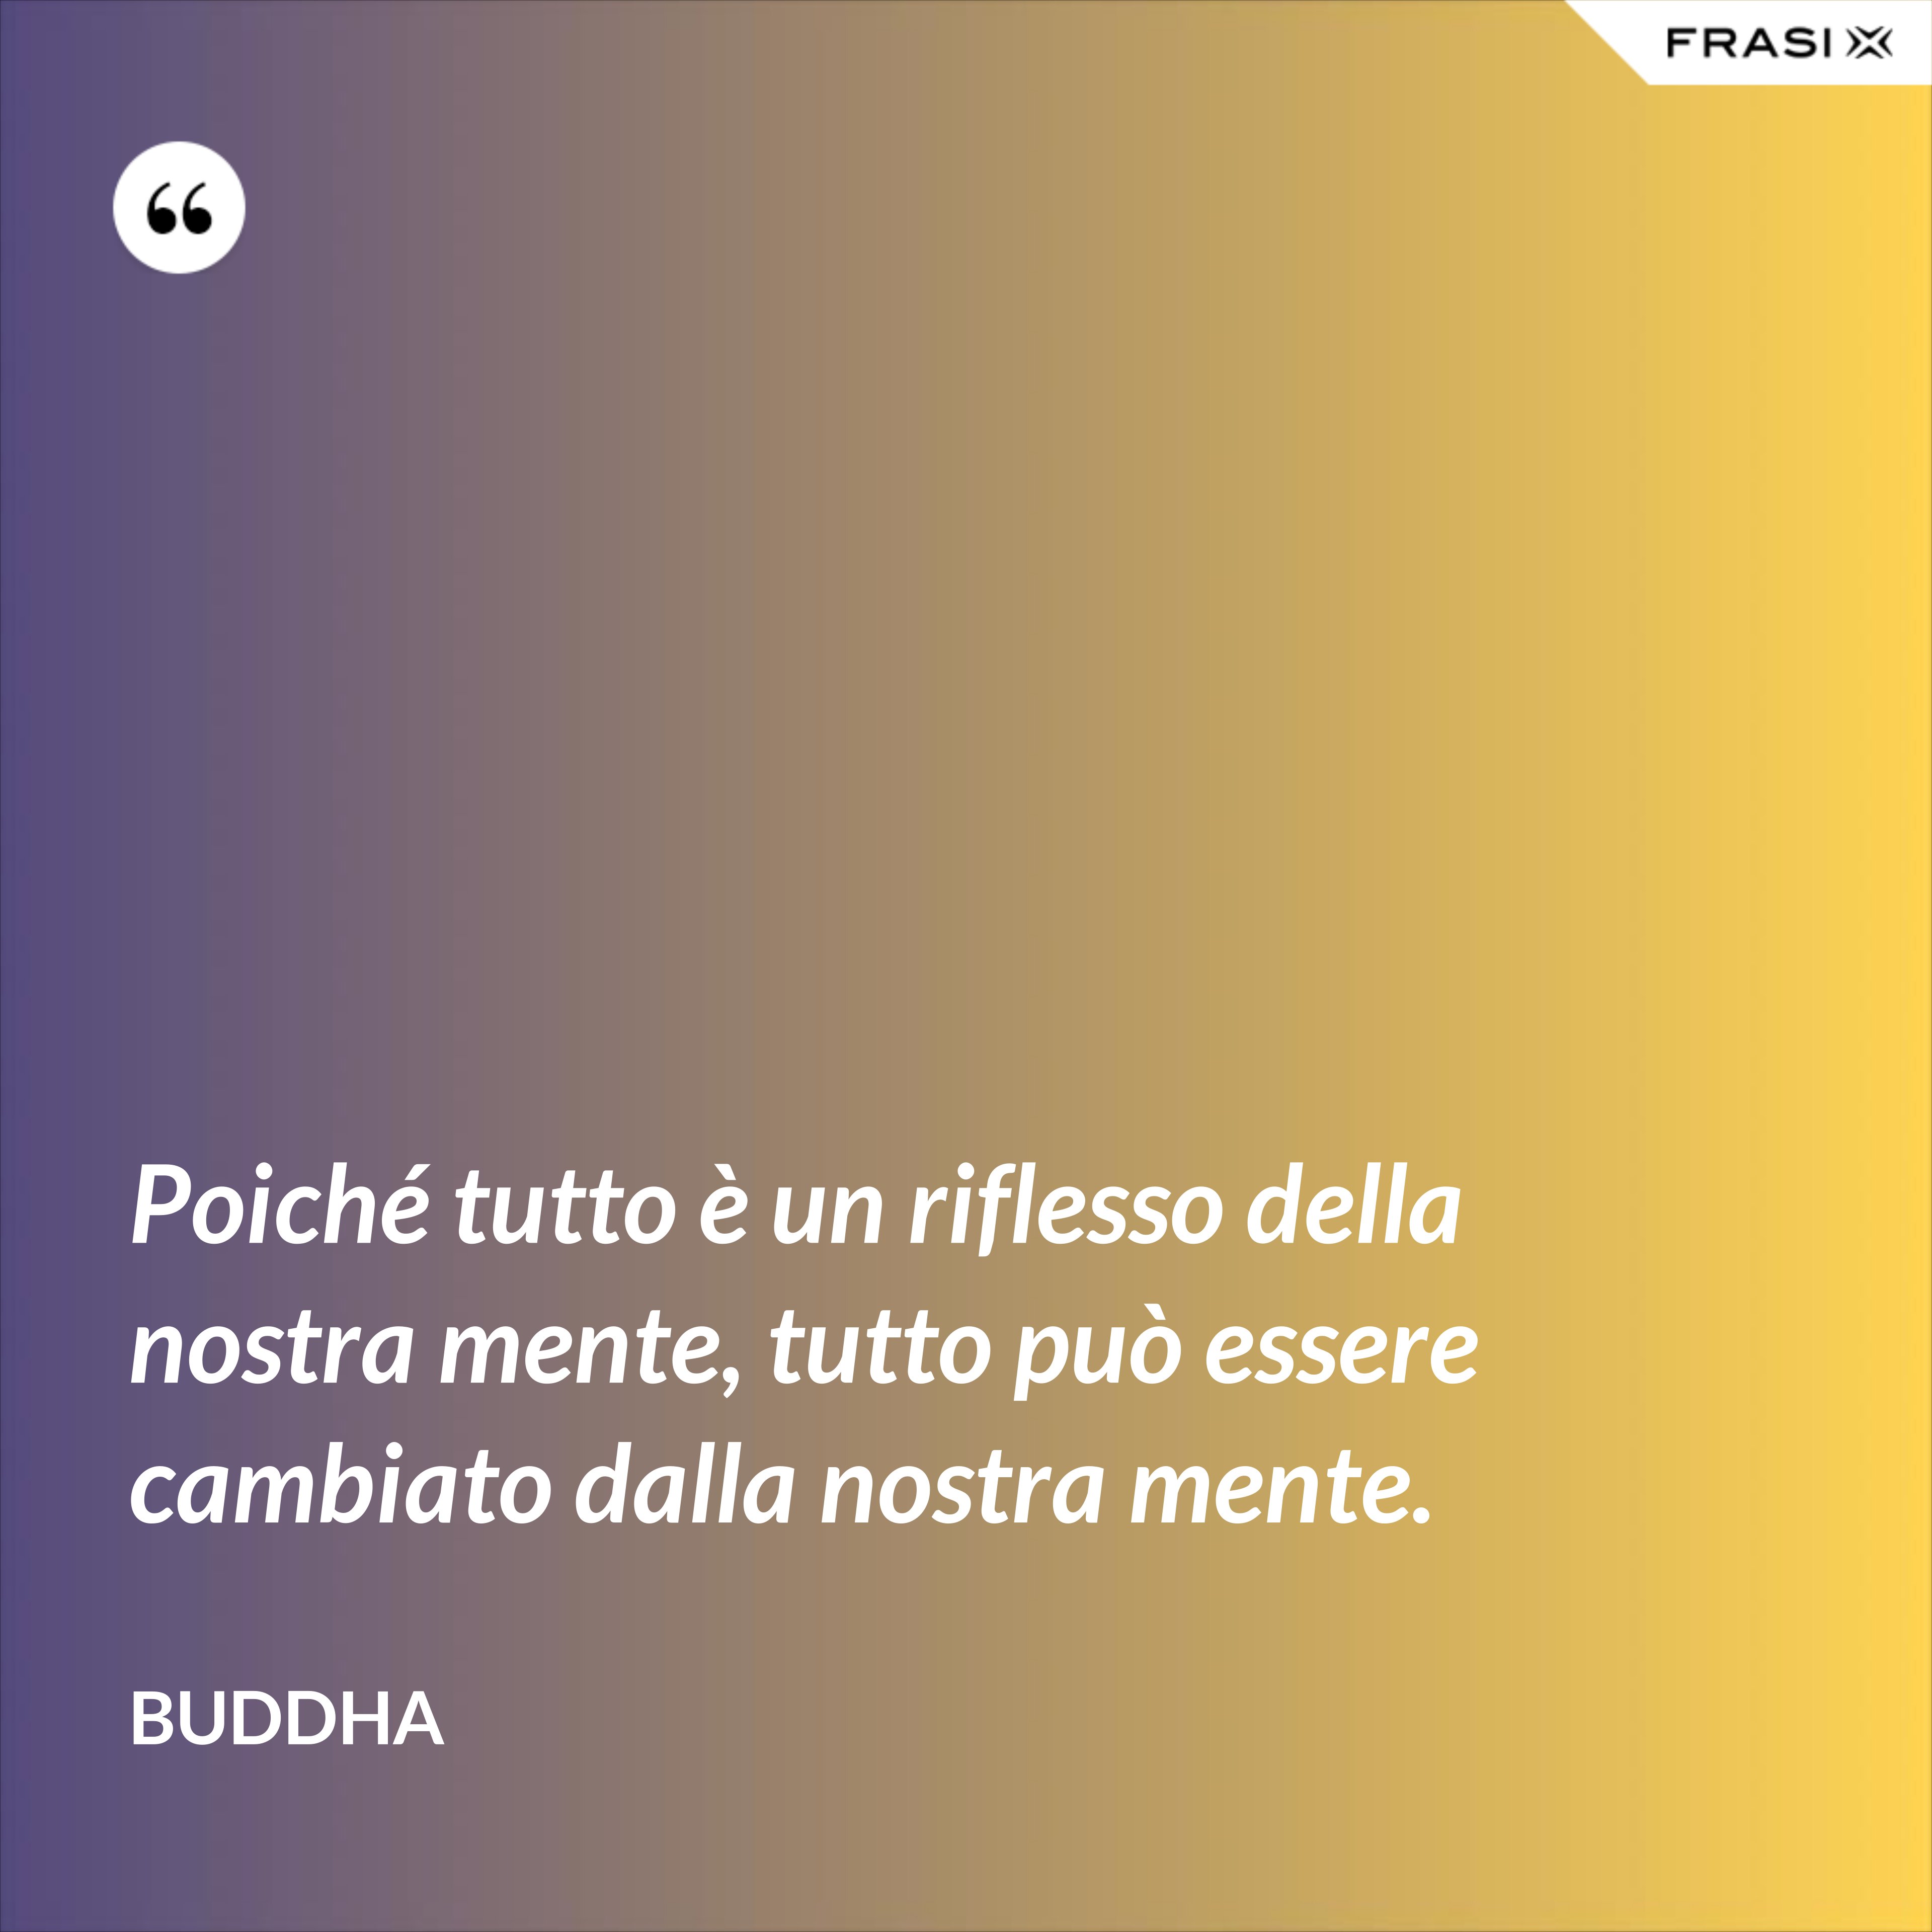 Poiché tutto è un riflesso della nostra mente, tutto può essere cambiato dalla nostra mente. - Buddha